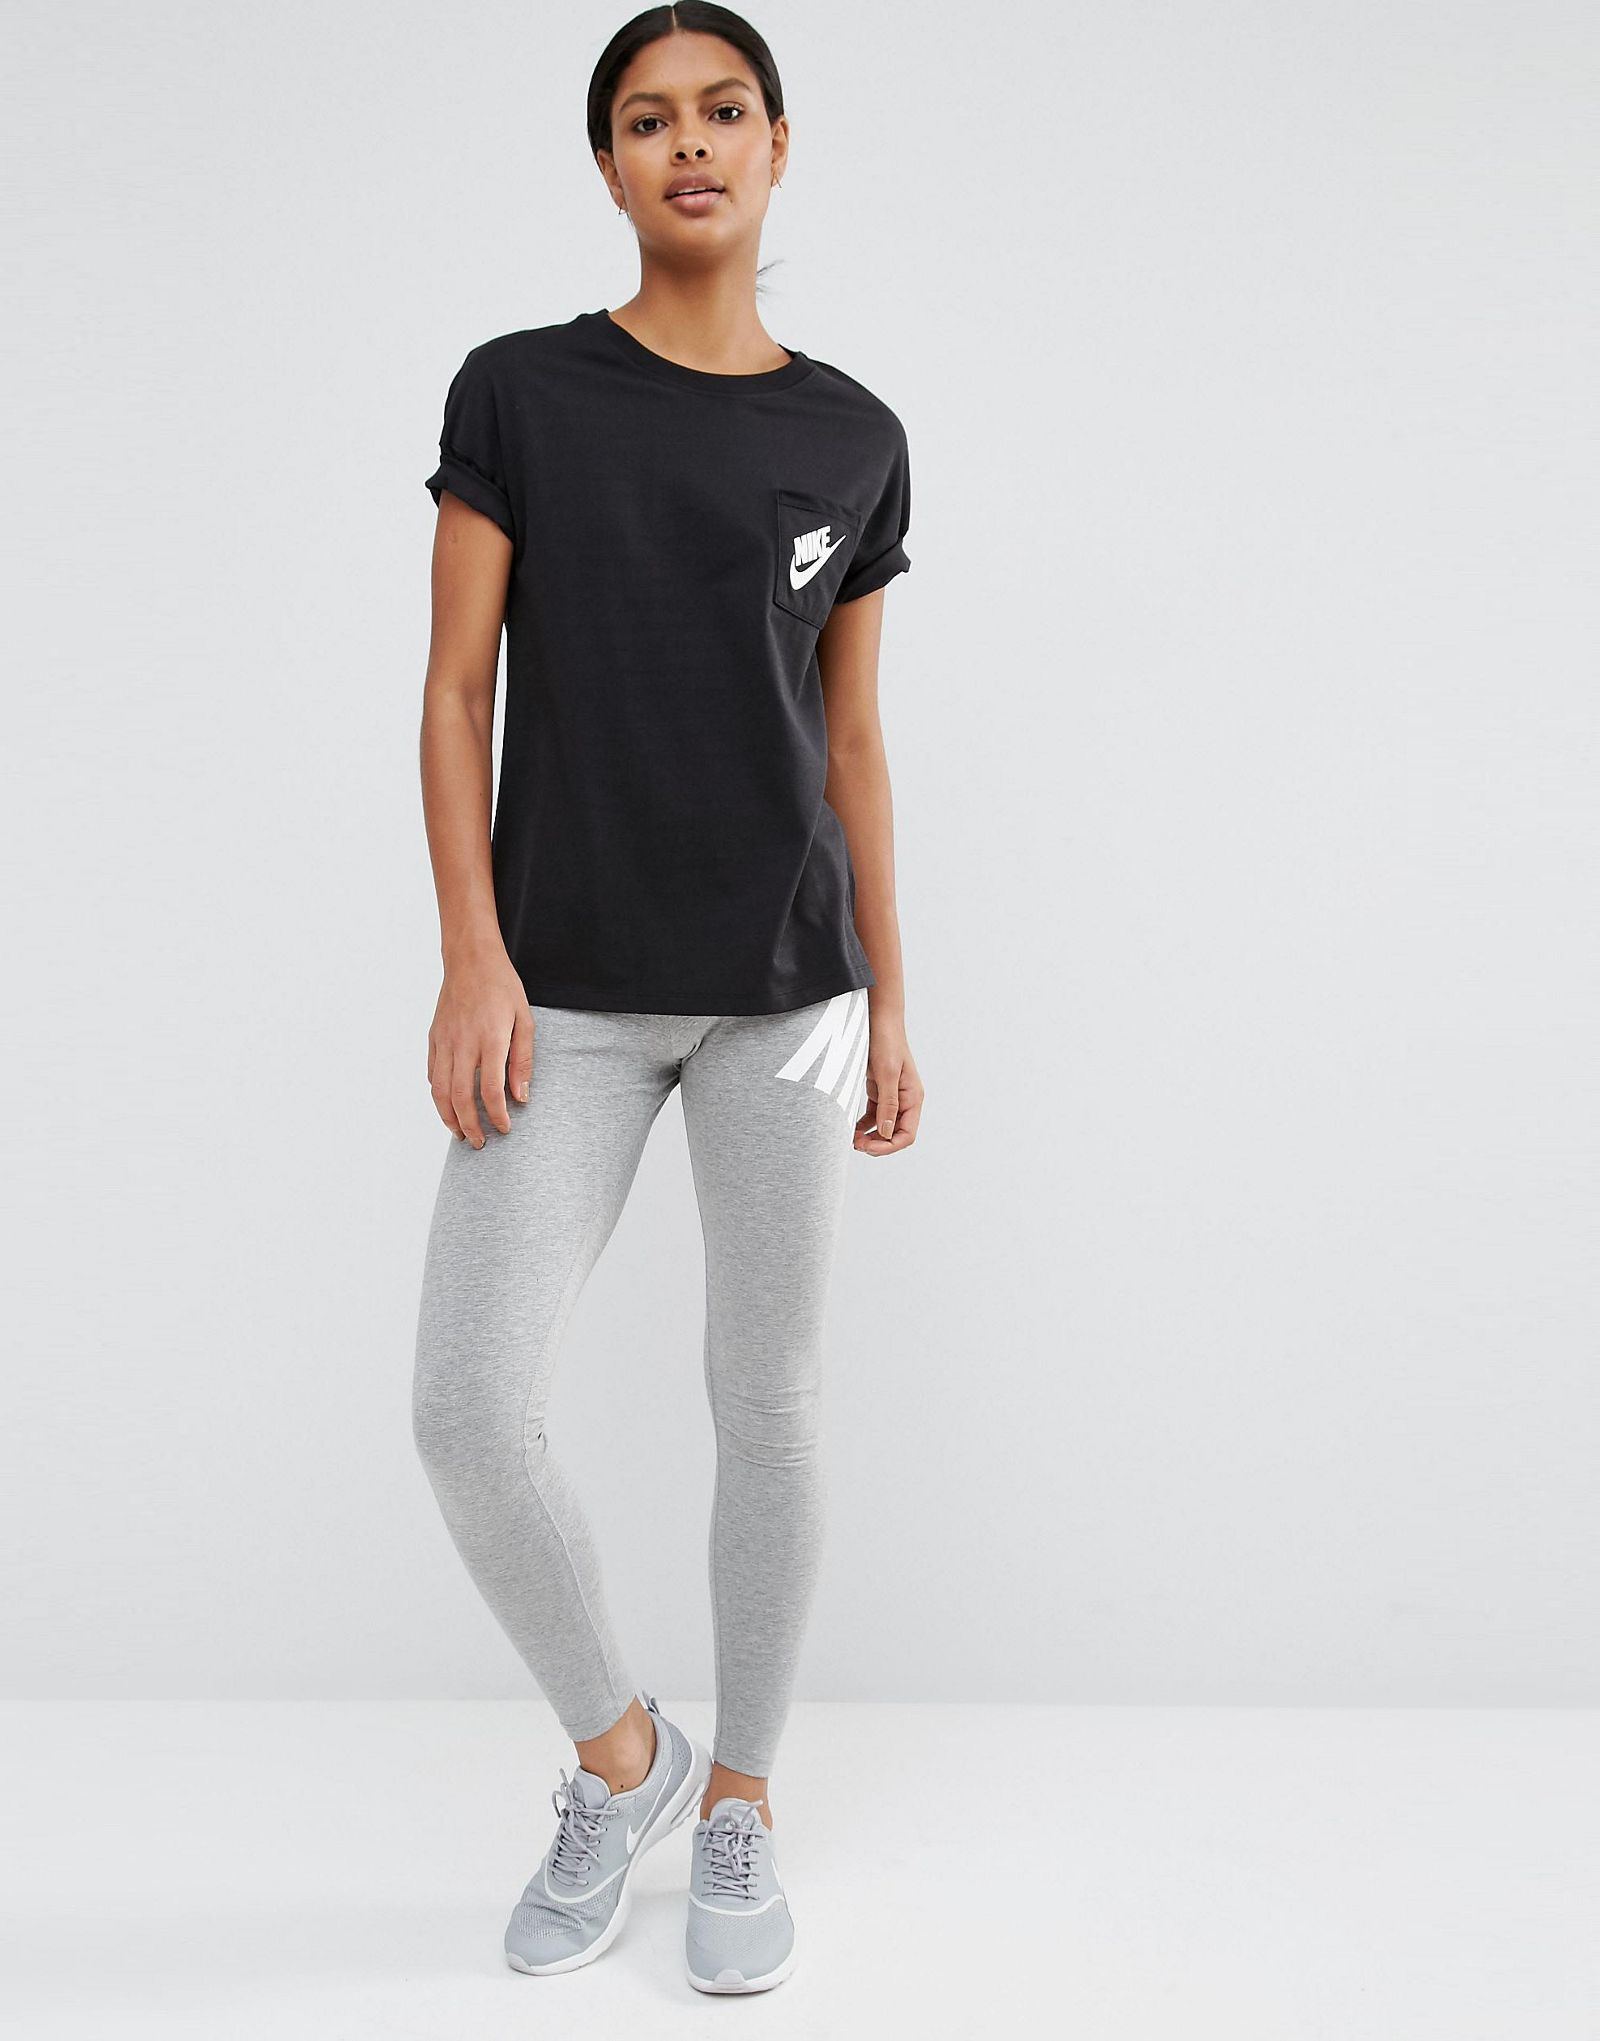 Nike Signal Short Sleeve T-Shirt